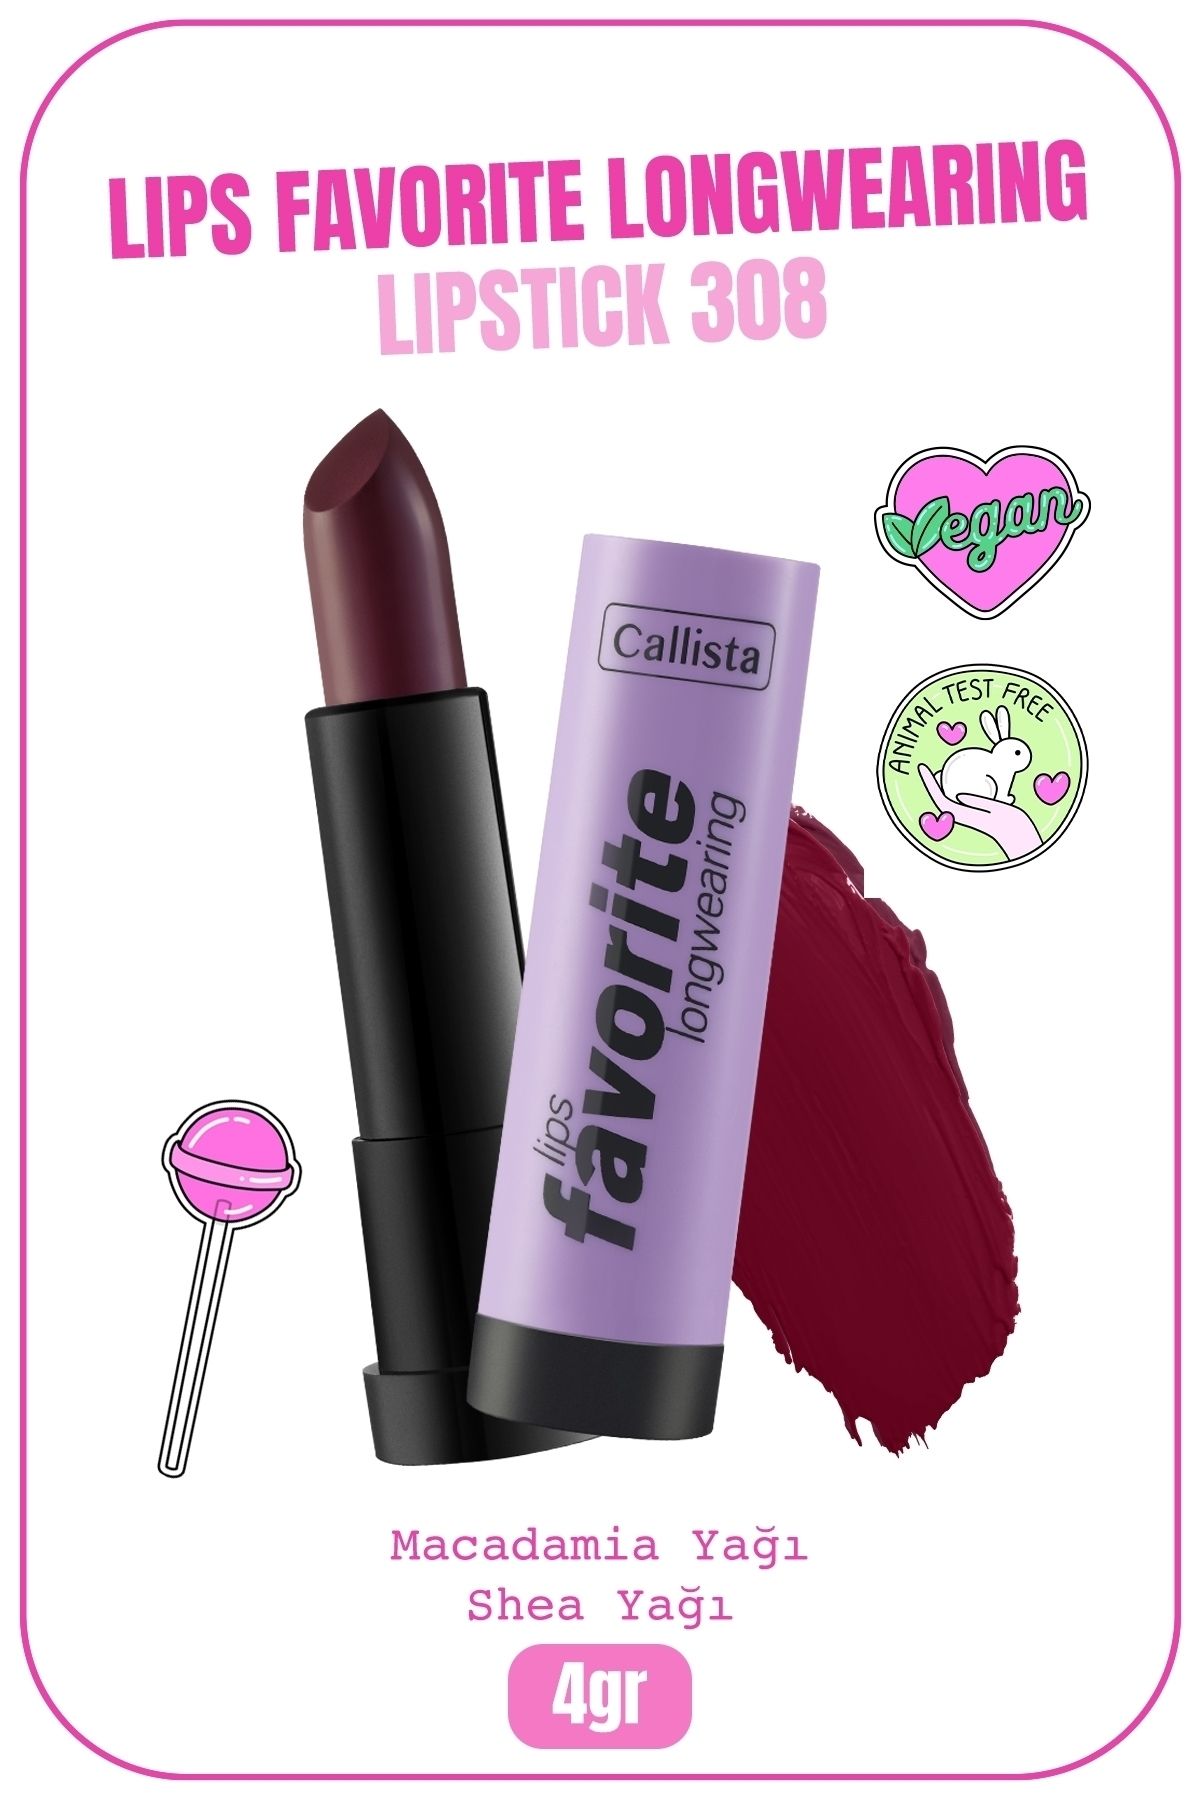 Callista Lips Favorite Longwearing Lipstick Ruj 308 Vampy Like - Bordo